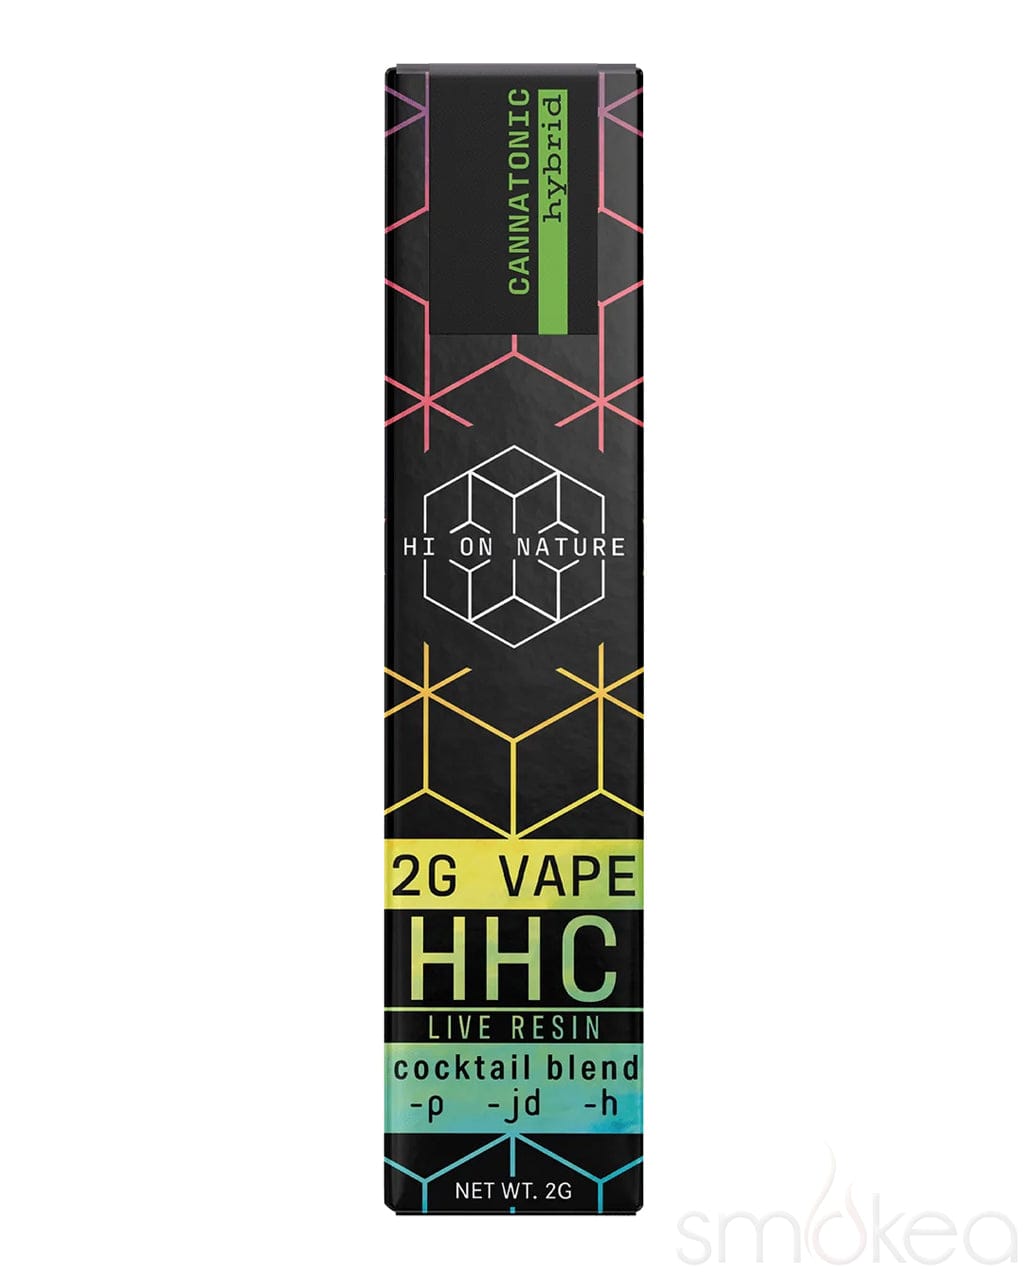 Hi On Nature 2g HHC Cocktail Live Resin Vape - Cannatonic